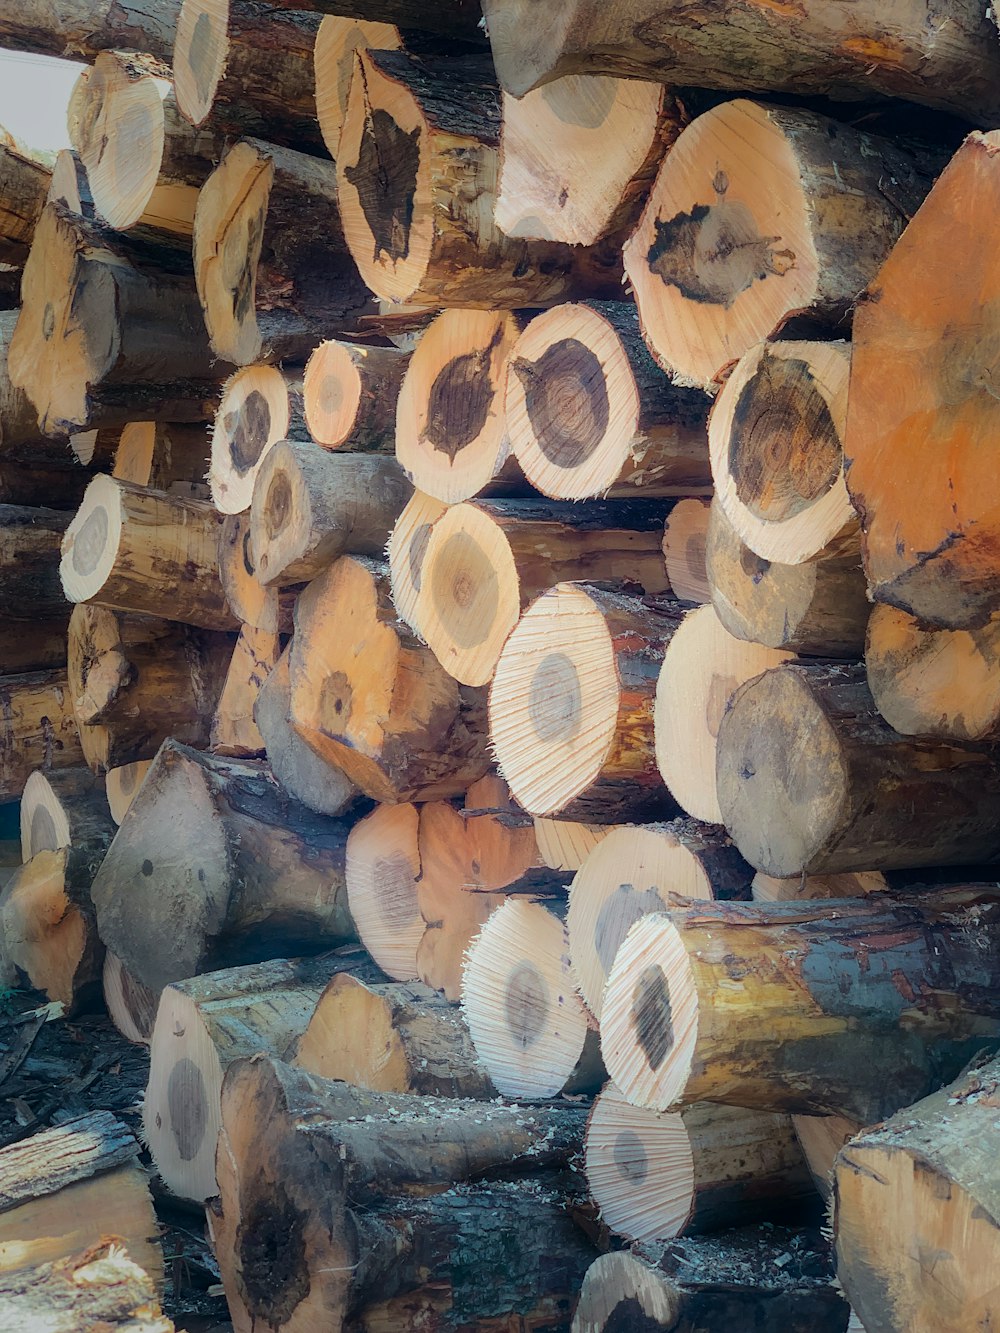 pila de troncos de madera marrón